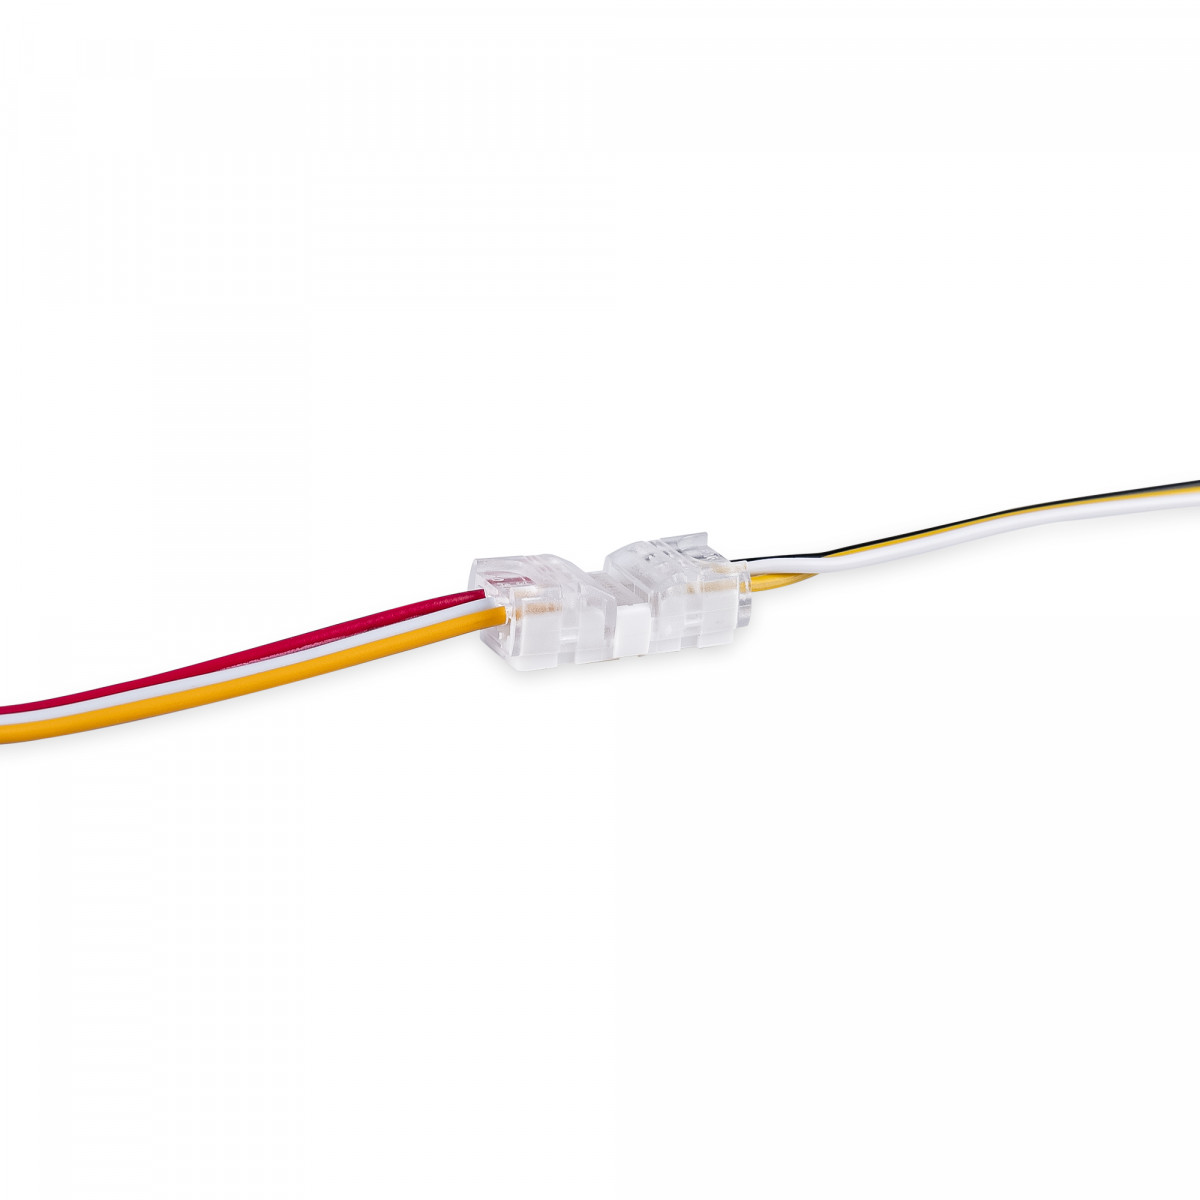 CCT Schnellverbinder, Kabel zu Kabel - 3 polig (3 Drähte) - LED Streifen verbinden